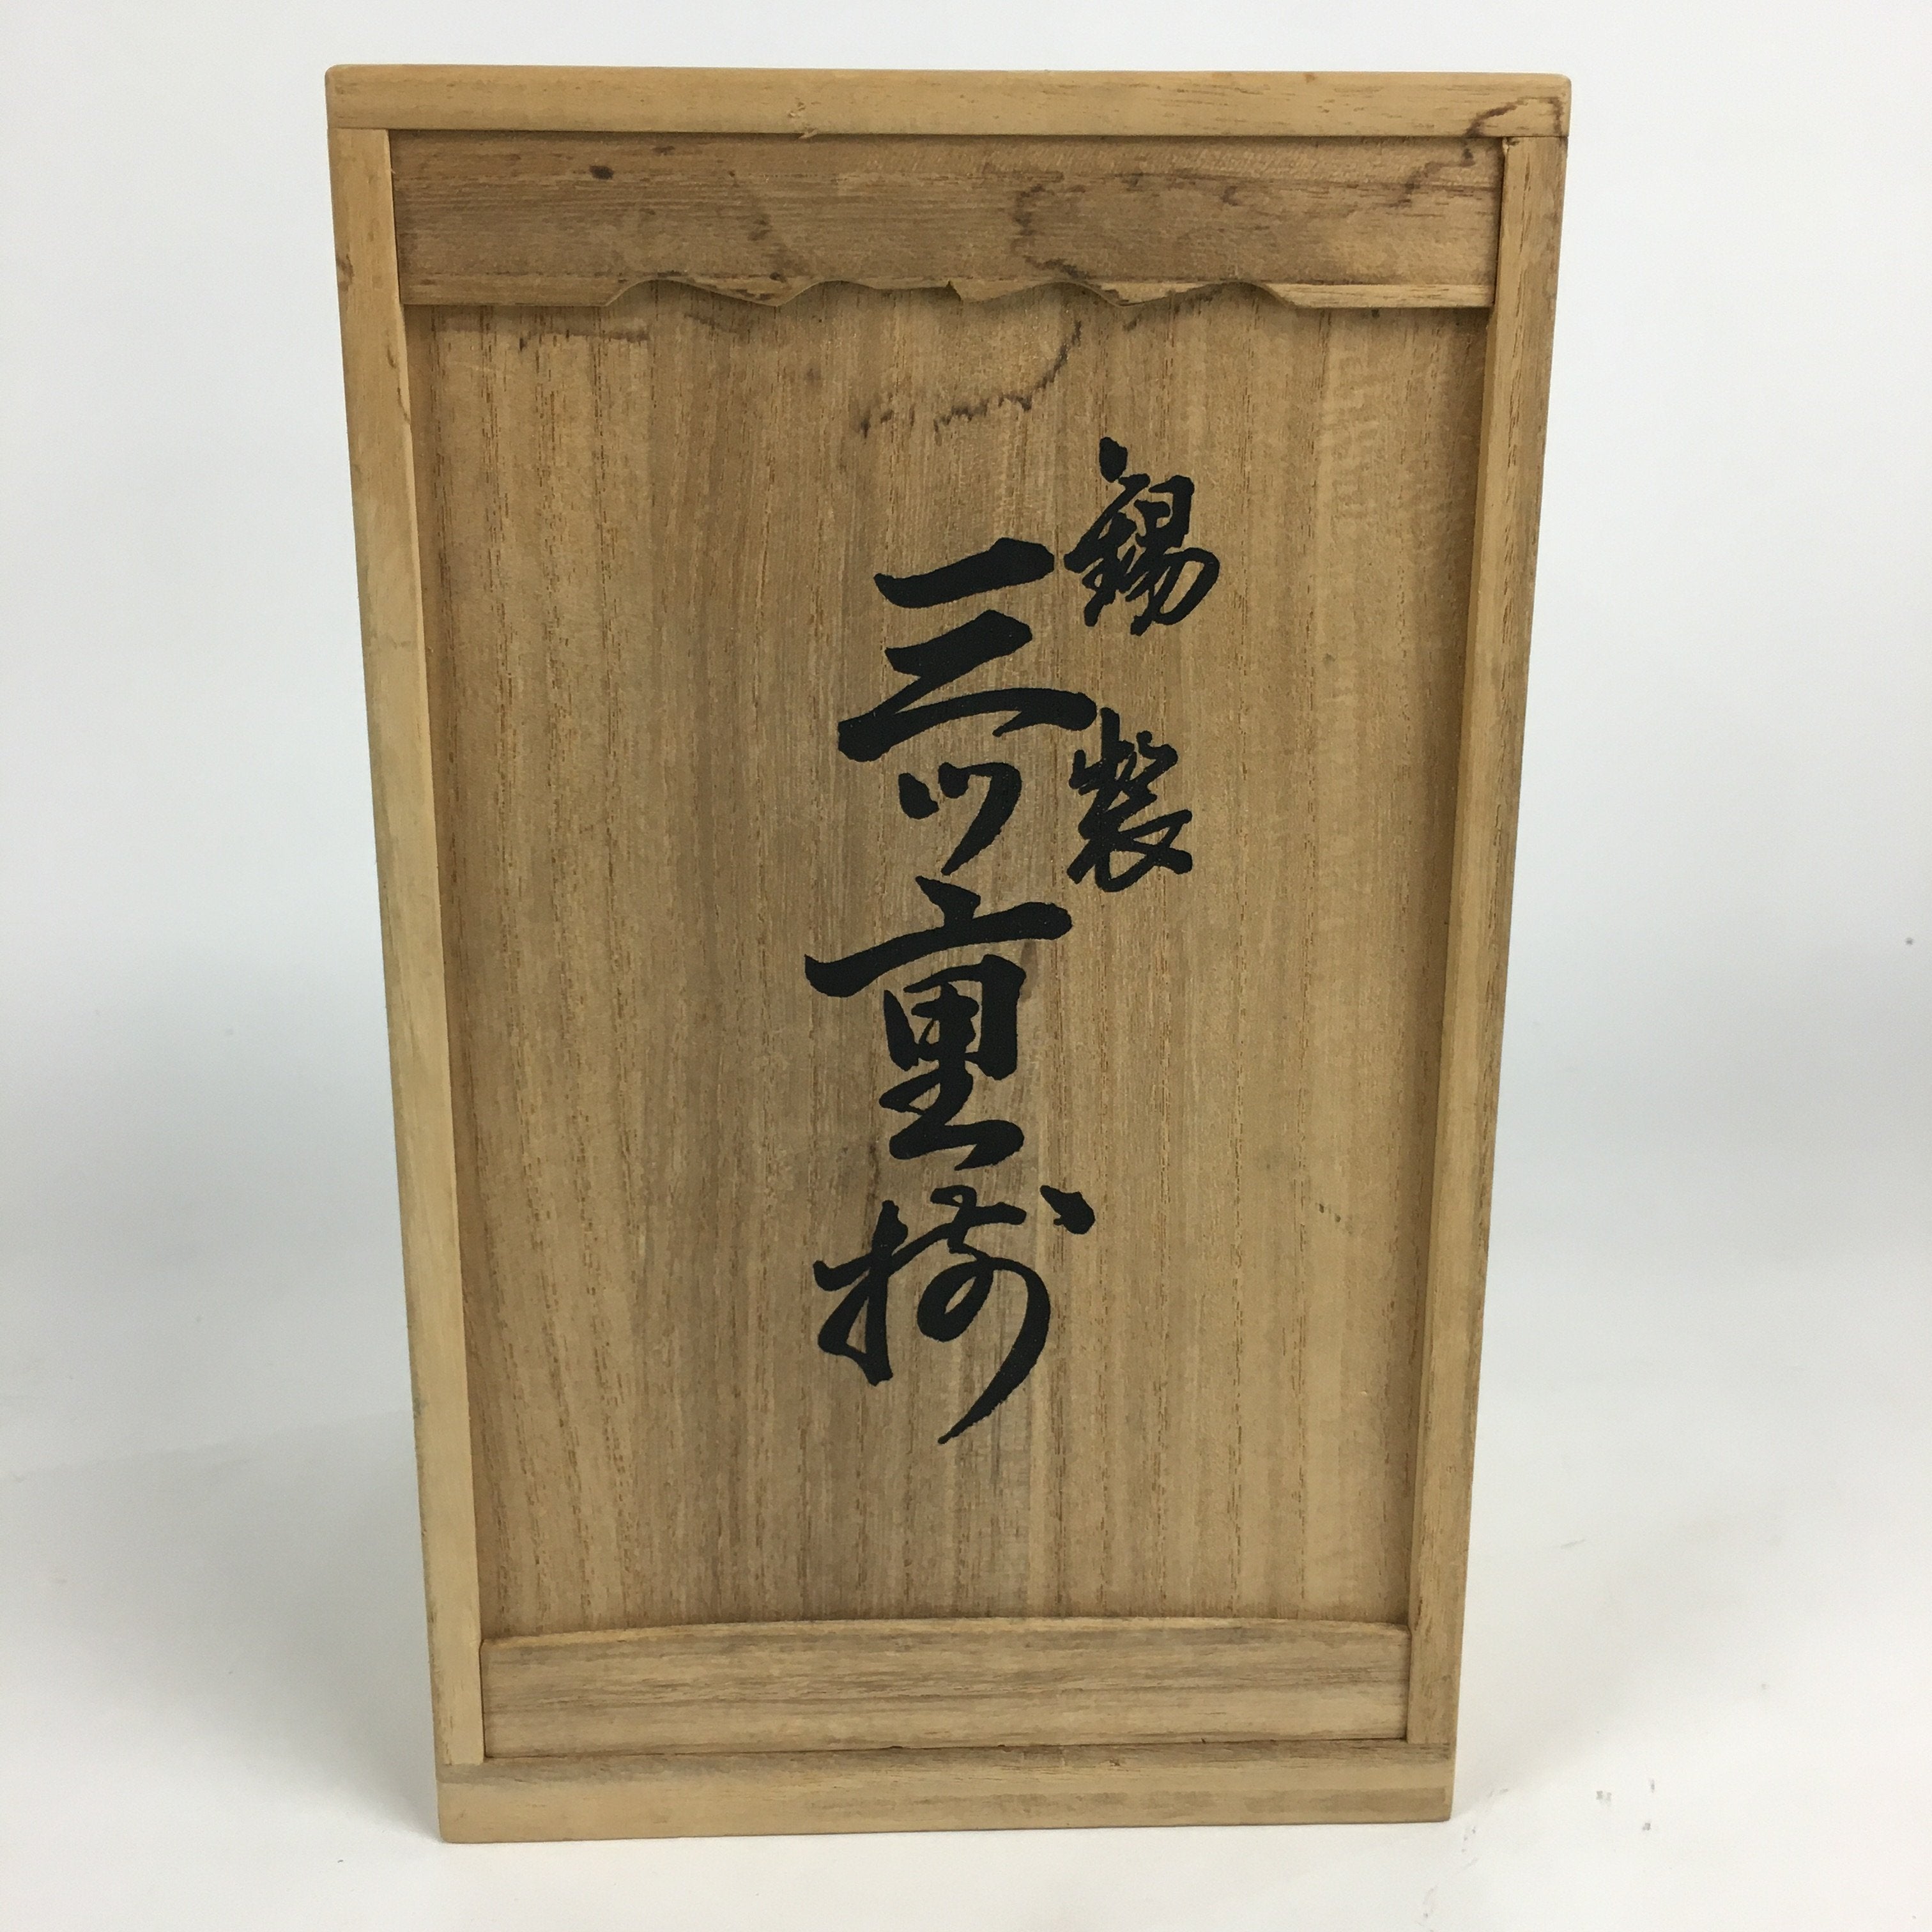 Japanese Wooden Storage Box Pottery Vtg Hako Inside 16x16.4x26.6cm WB835